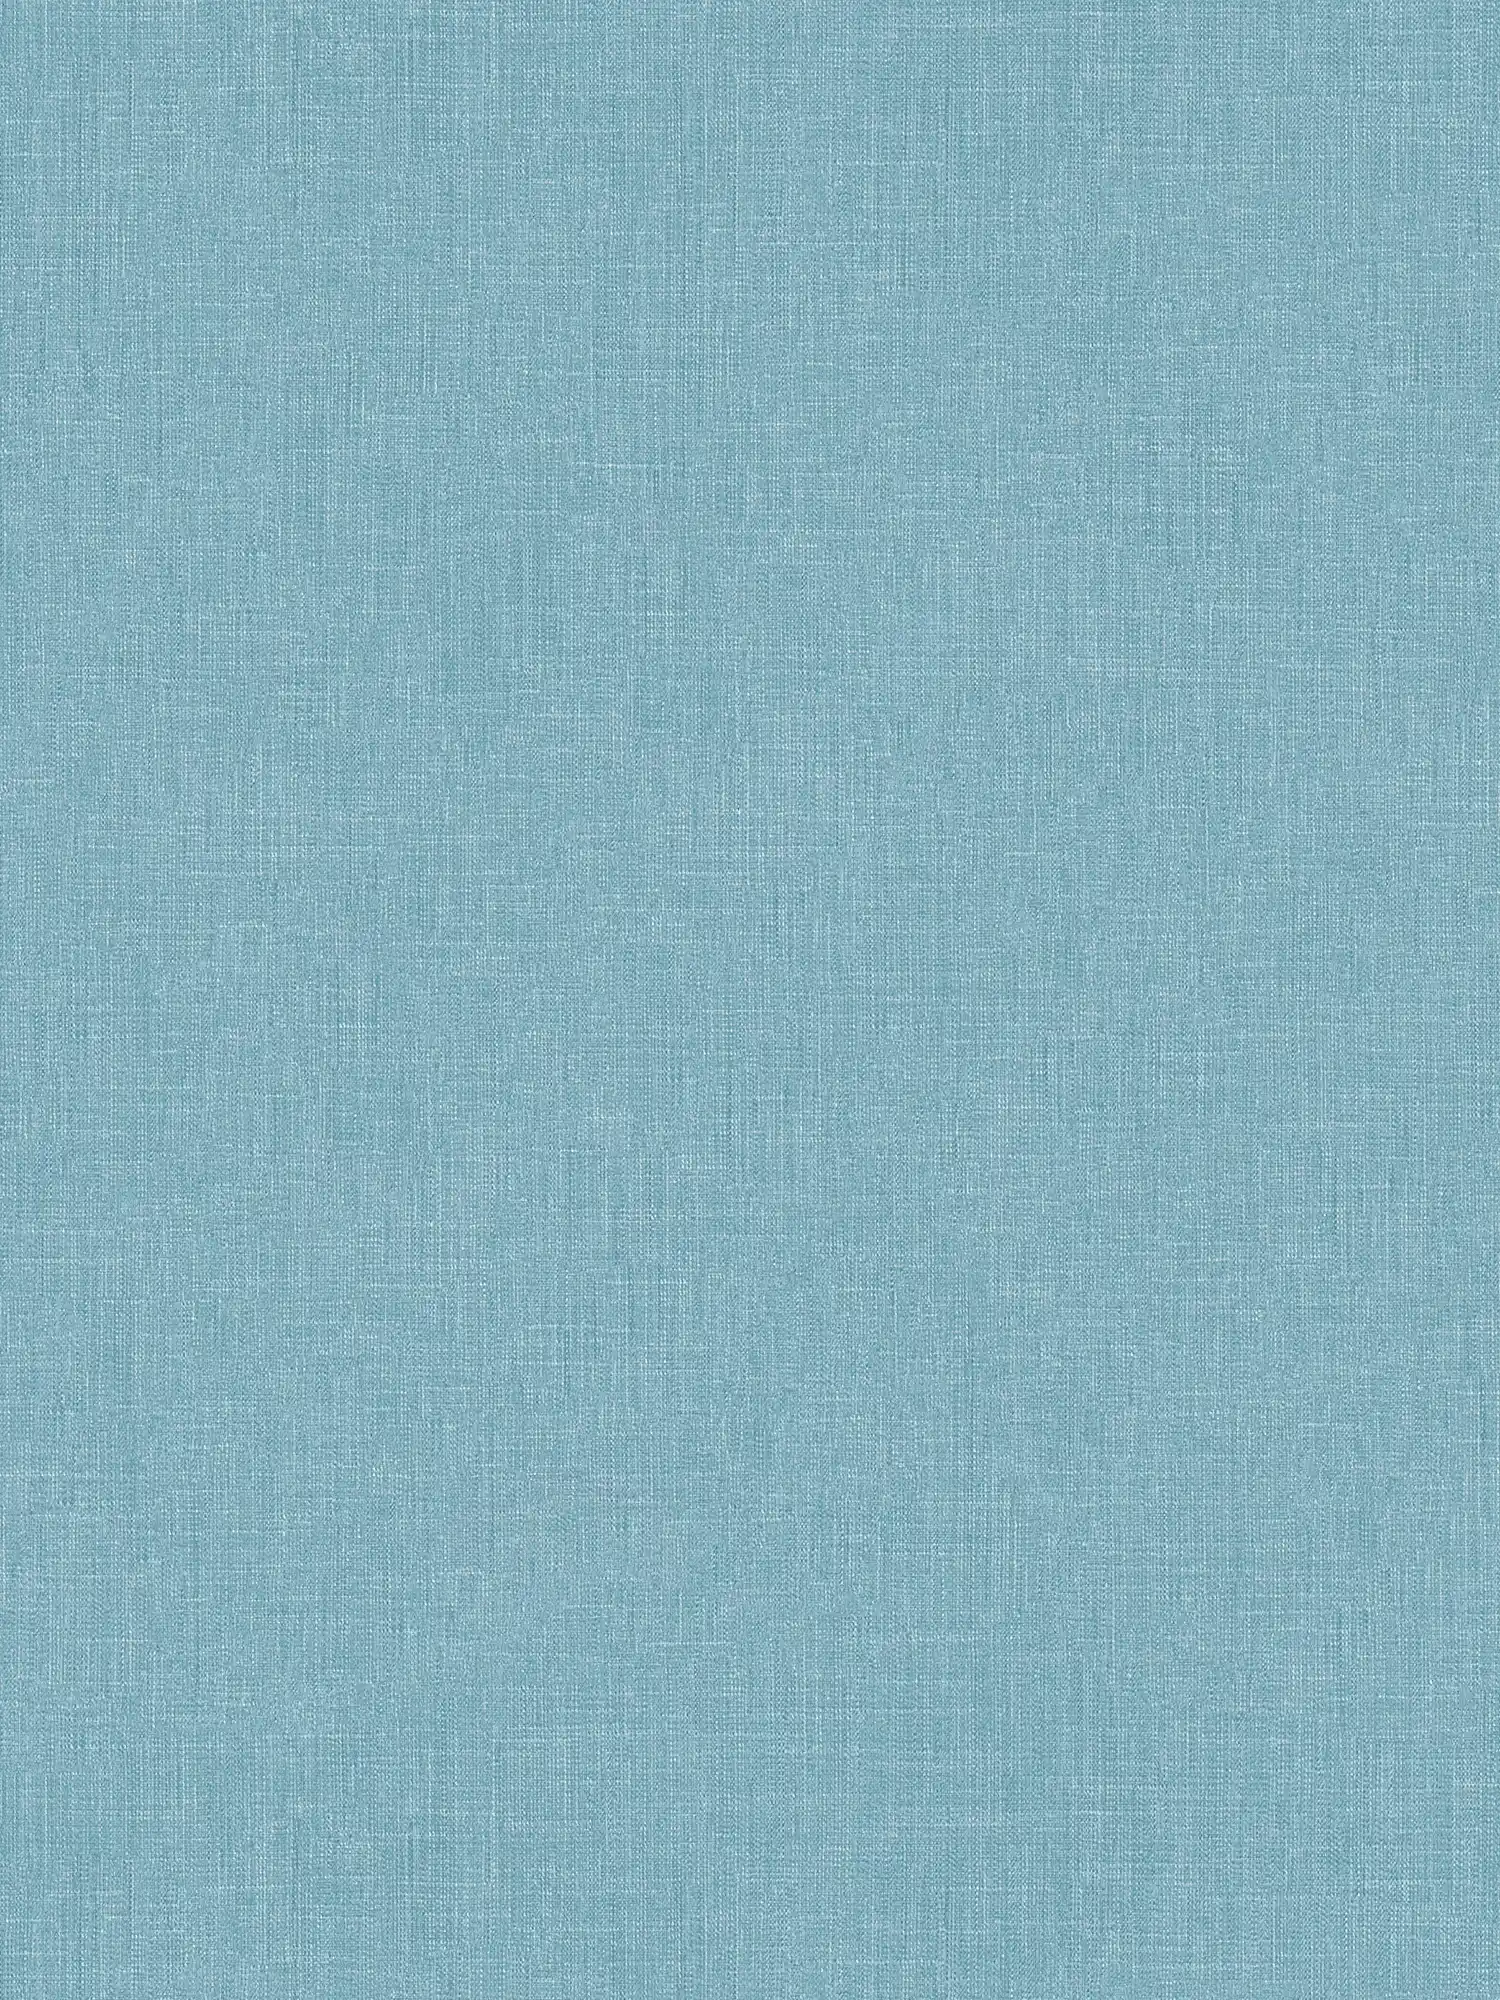 Papier peint intissé bleu chiné avec structure textile style bouclé
